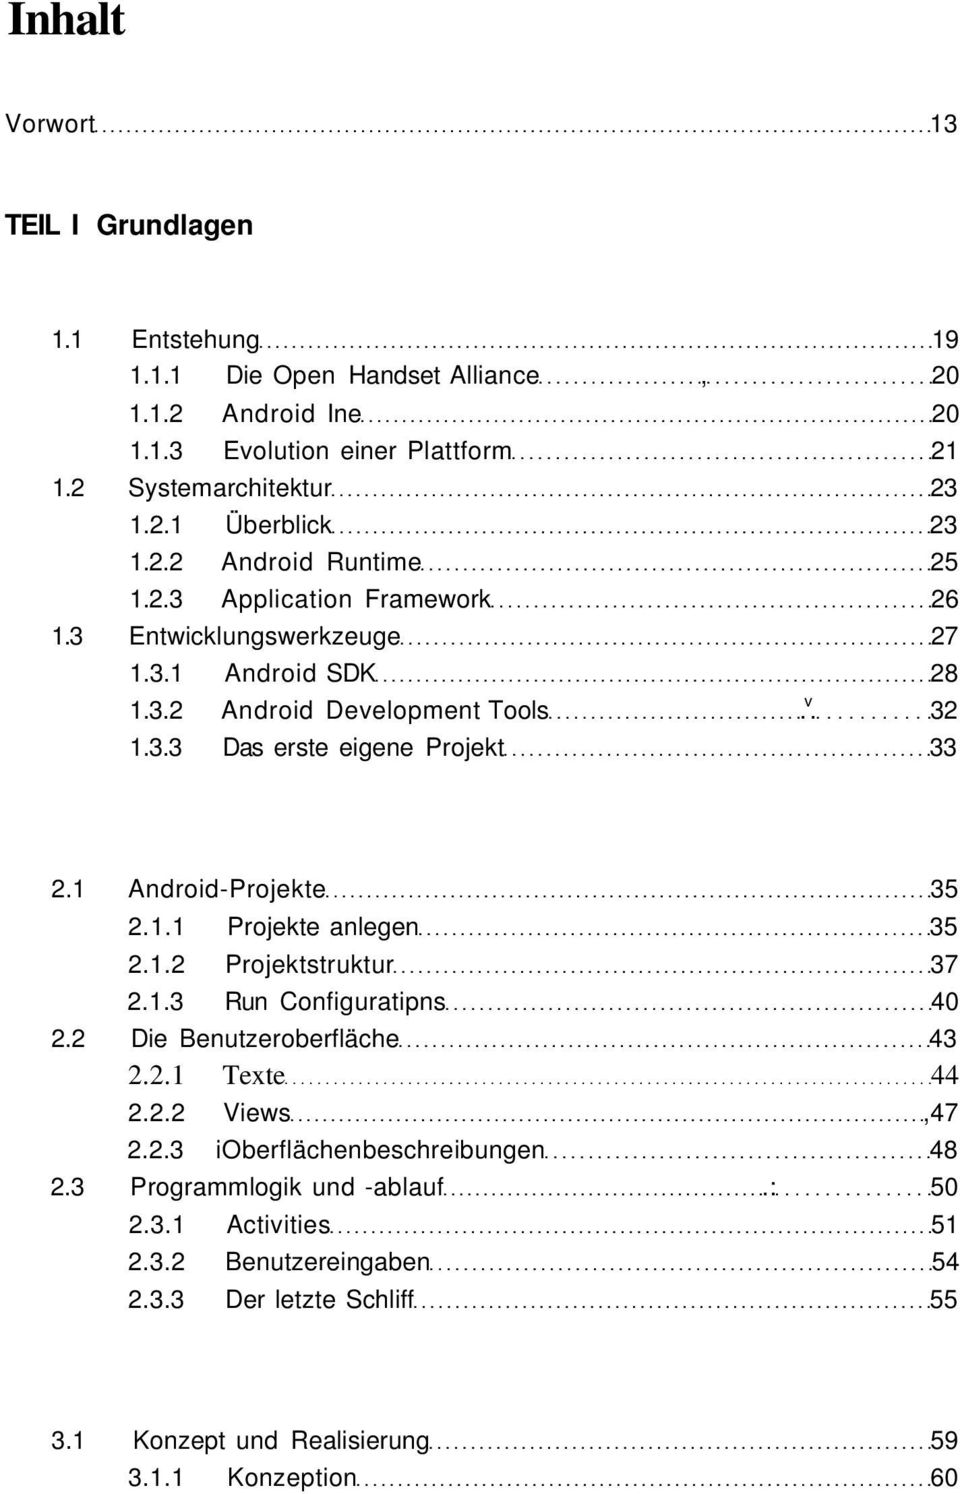 1 Android-Projekte 35 2.1.1 Projekte anlegen 35 2.1.2 Projektstruktur 37 2.1.3 Run Configuratipns 40 2.2 Die Benutzeroberfläche 43 2.2.1 Texte 44 2.2.2 Views,47 2.2.3 ioberflächenbeschreibungen 48 2.